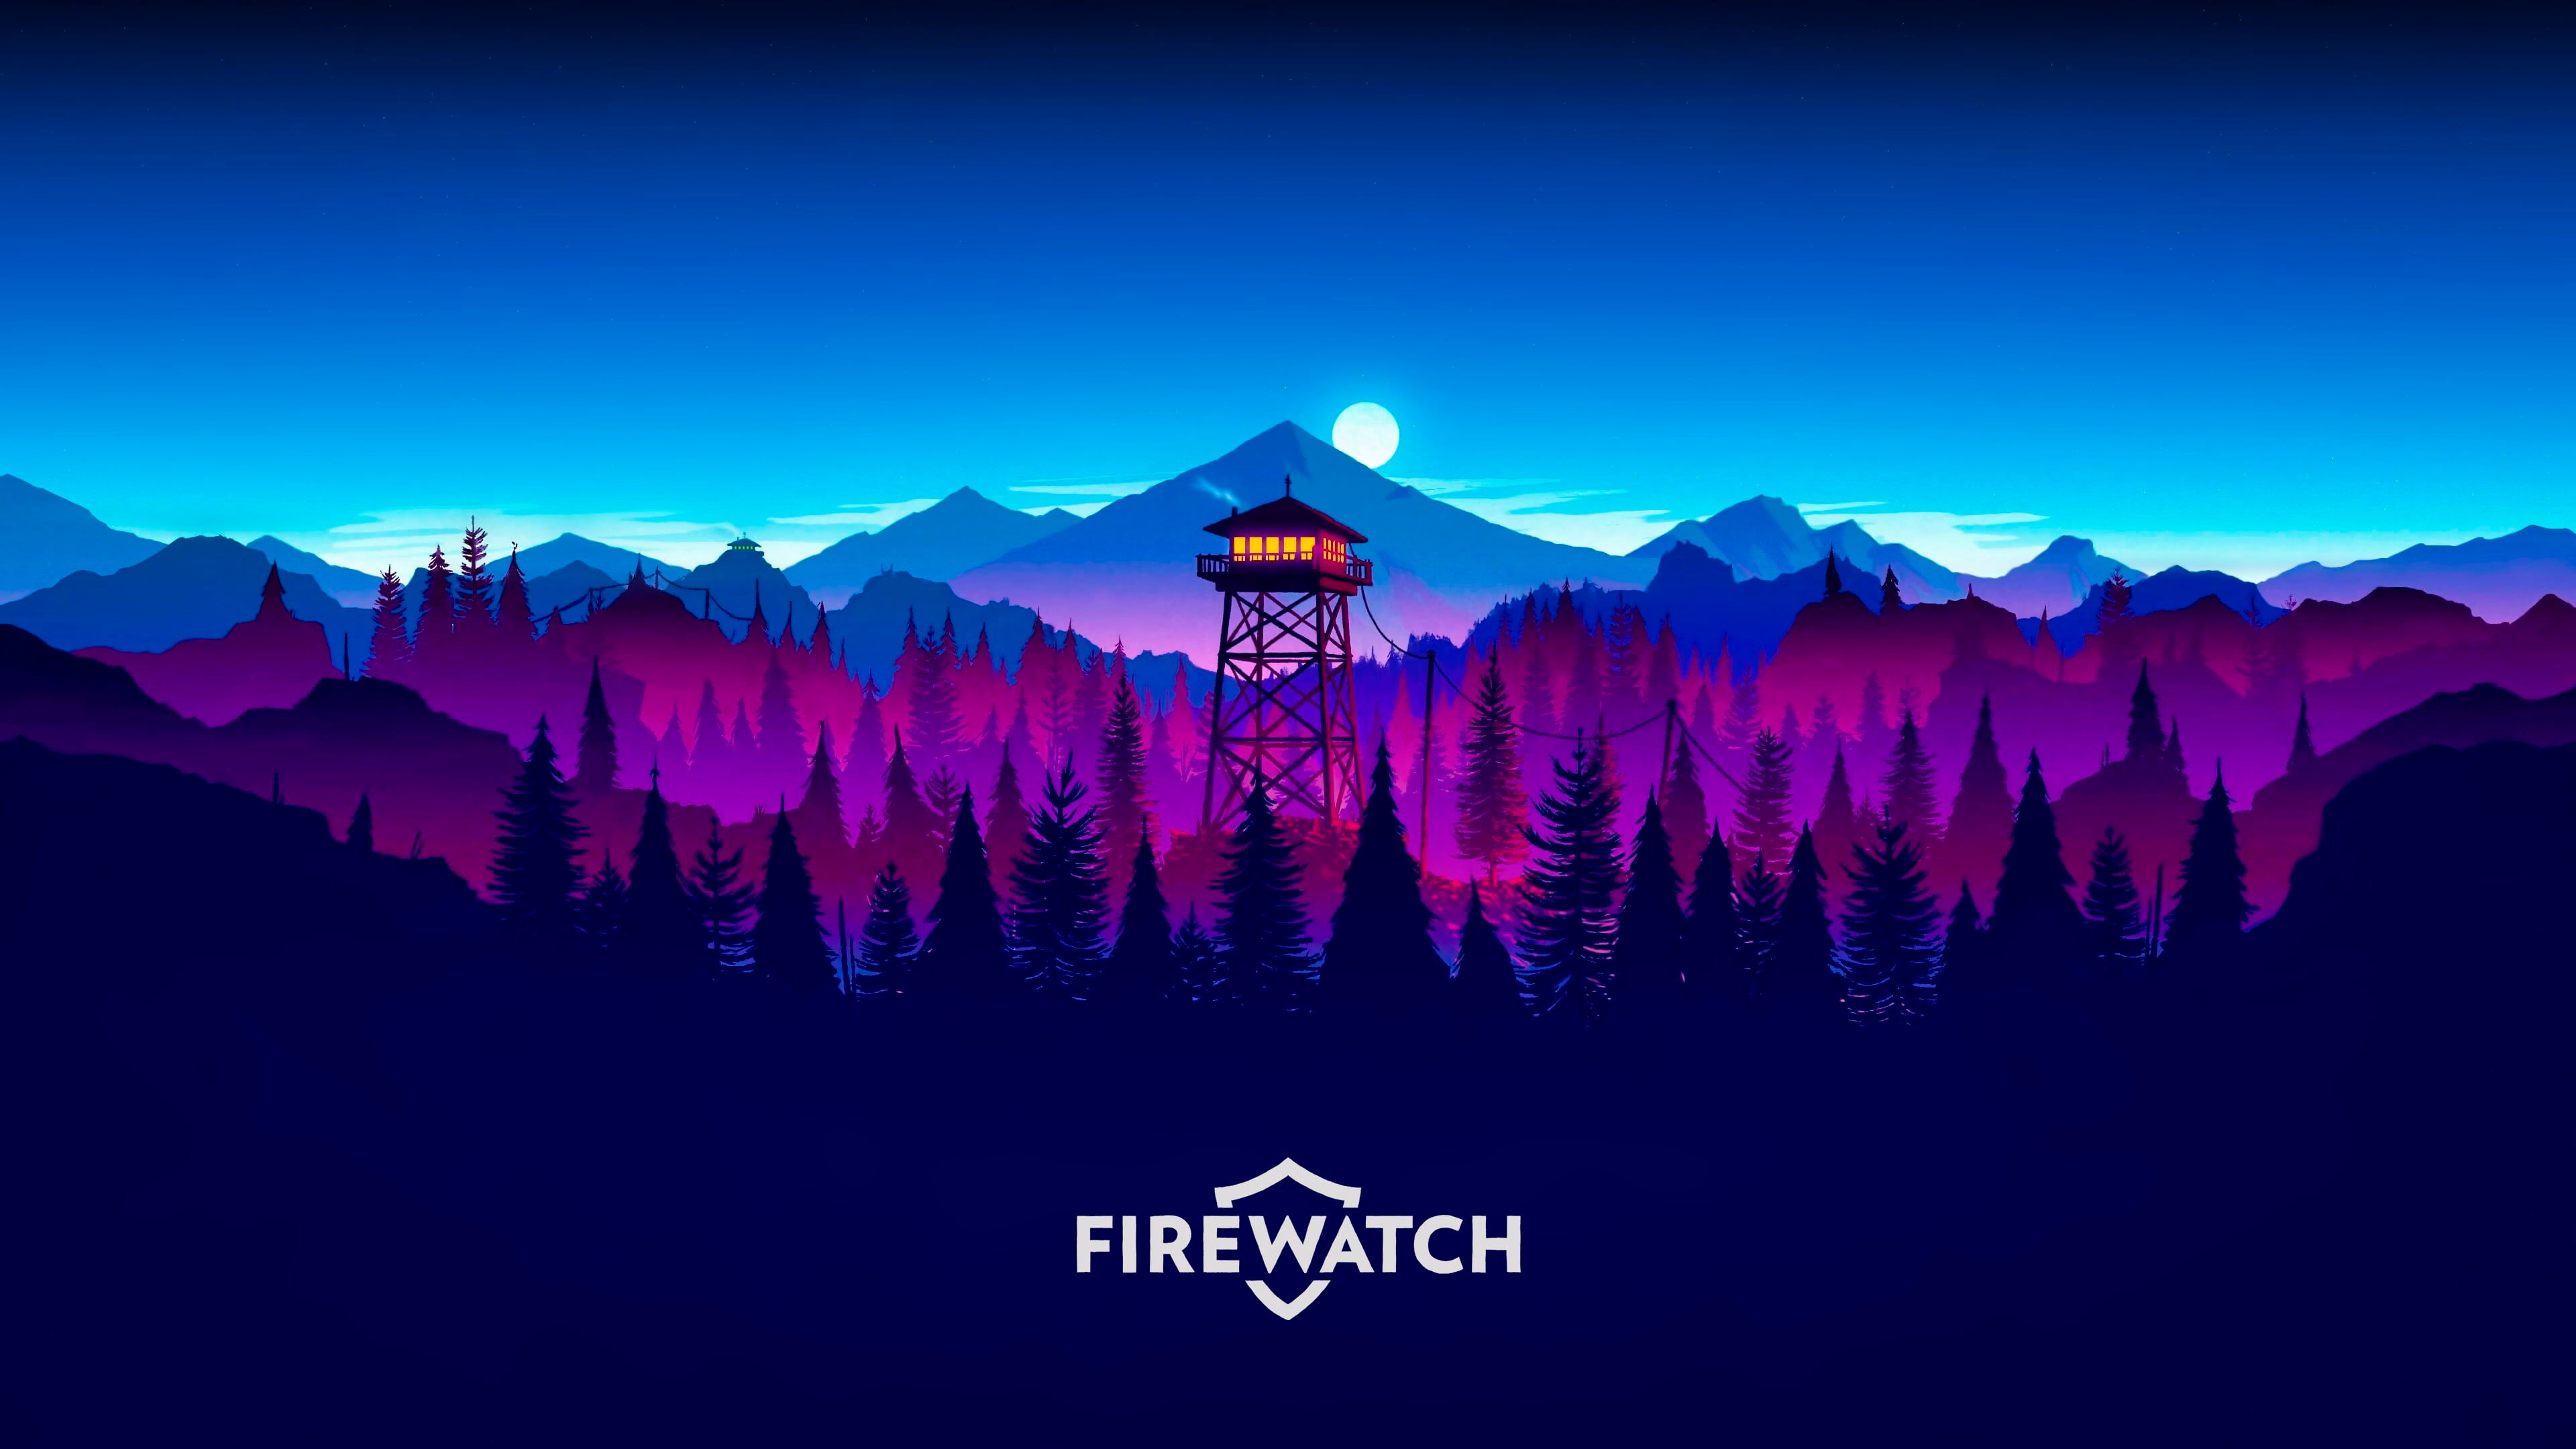 莫莉·莫斯firewatch, 艺术, 数码艺术, 冒险的游戏, 气氛 壁纸 3840x2160 允许